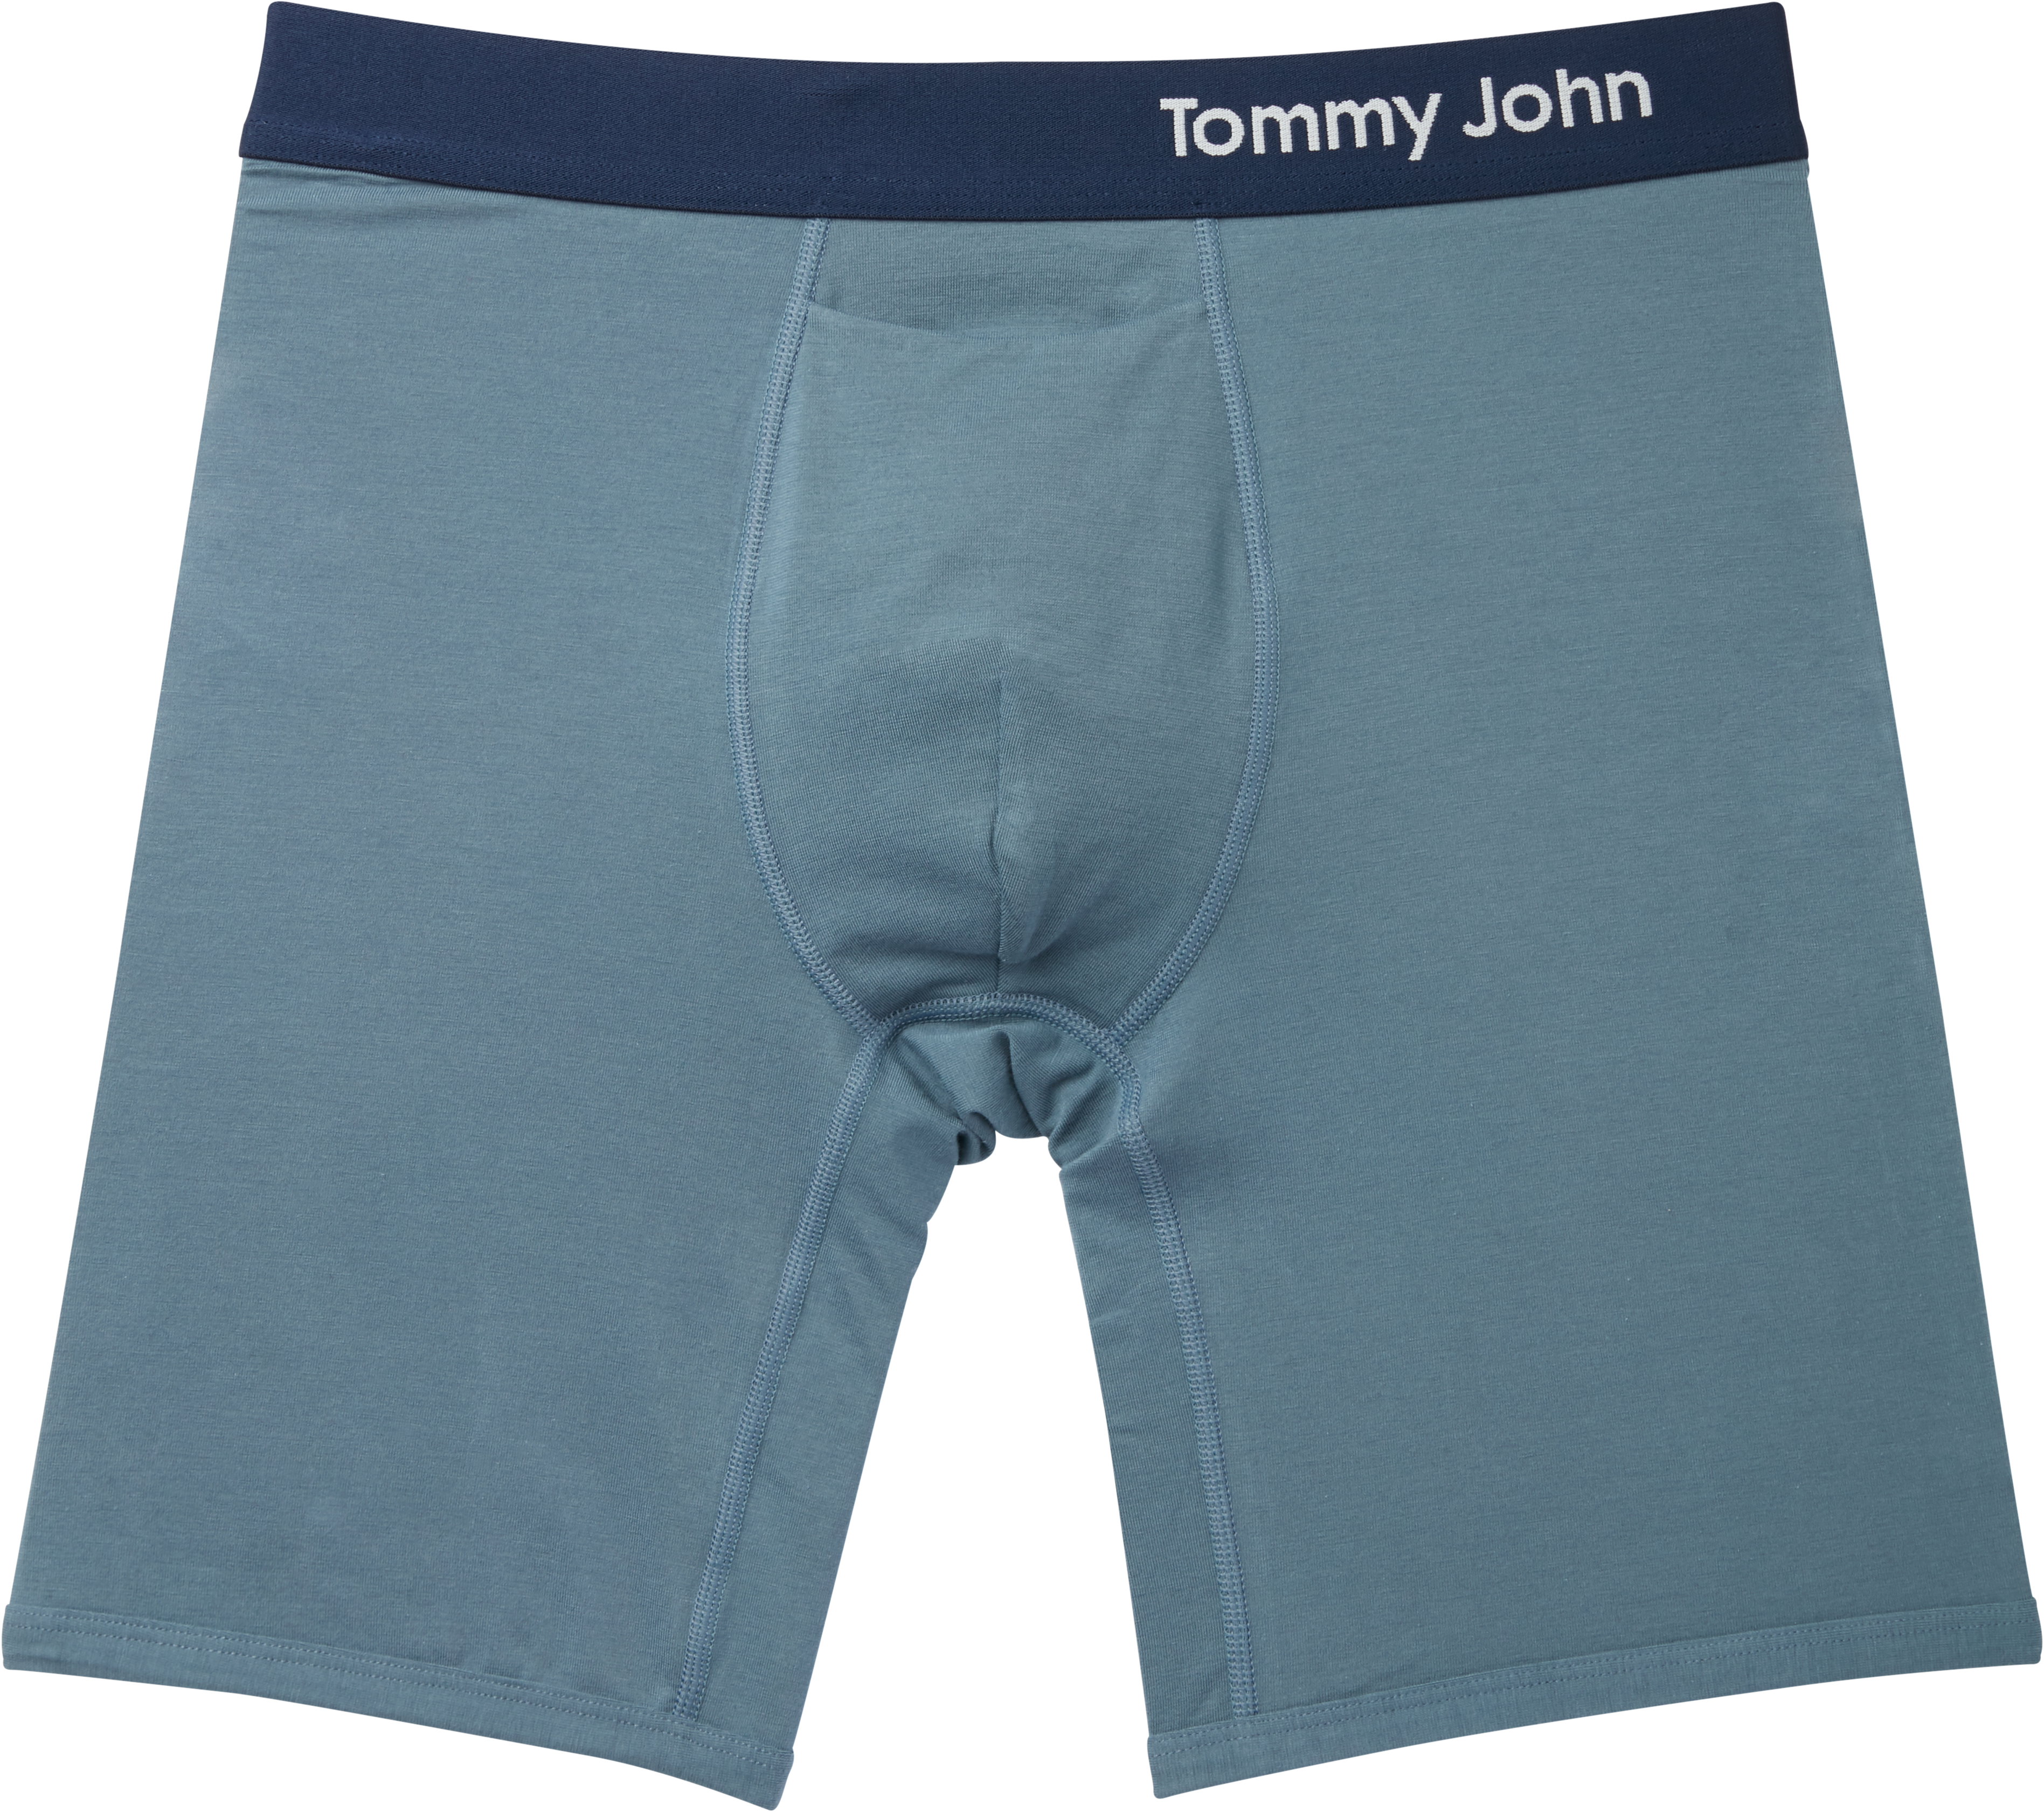 tommy john underwear men's wearhouse